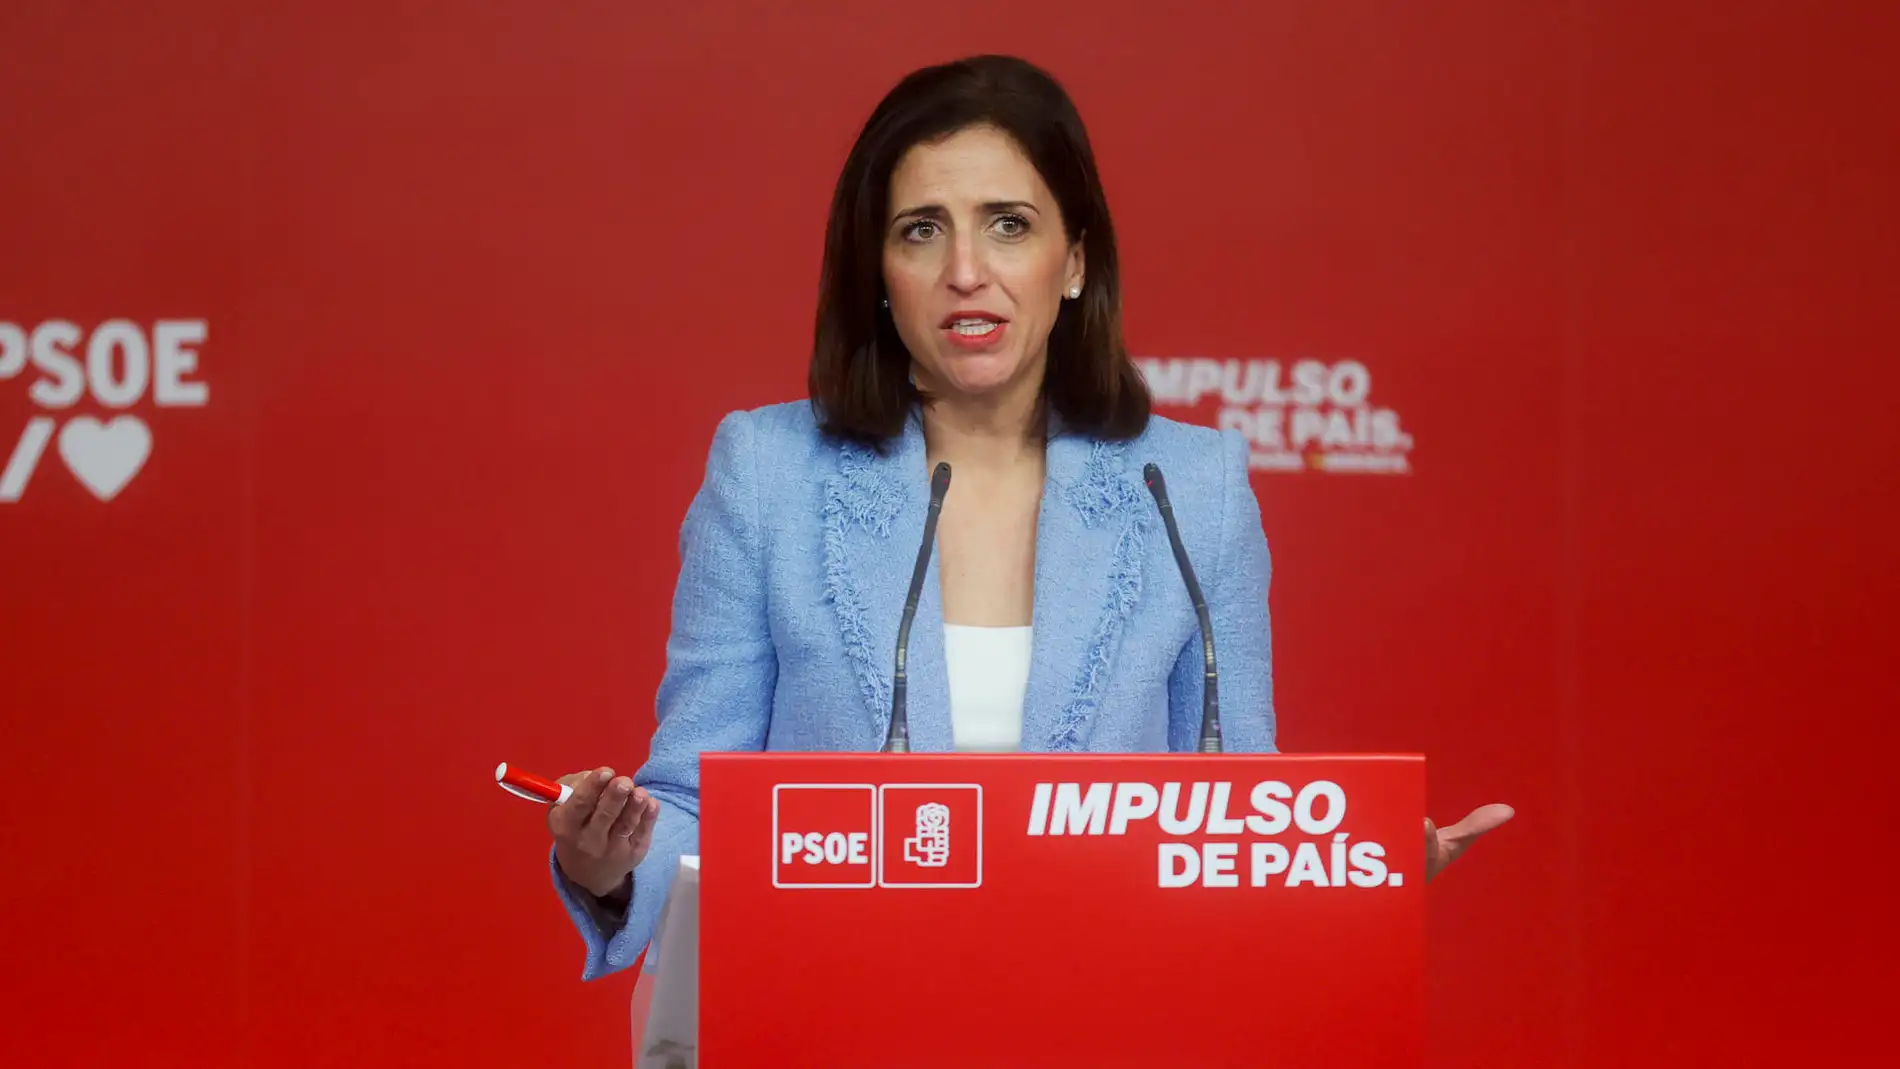 El PSOE señala que la democracia de España será "más completa" si se aplica la ley de amnistía